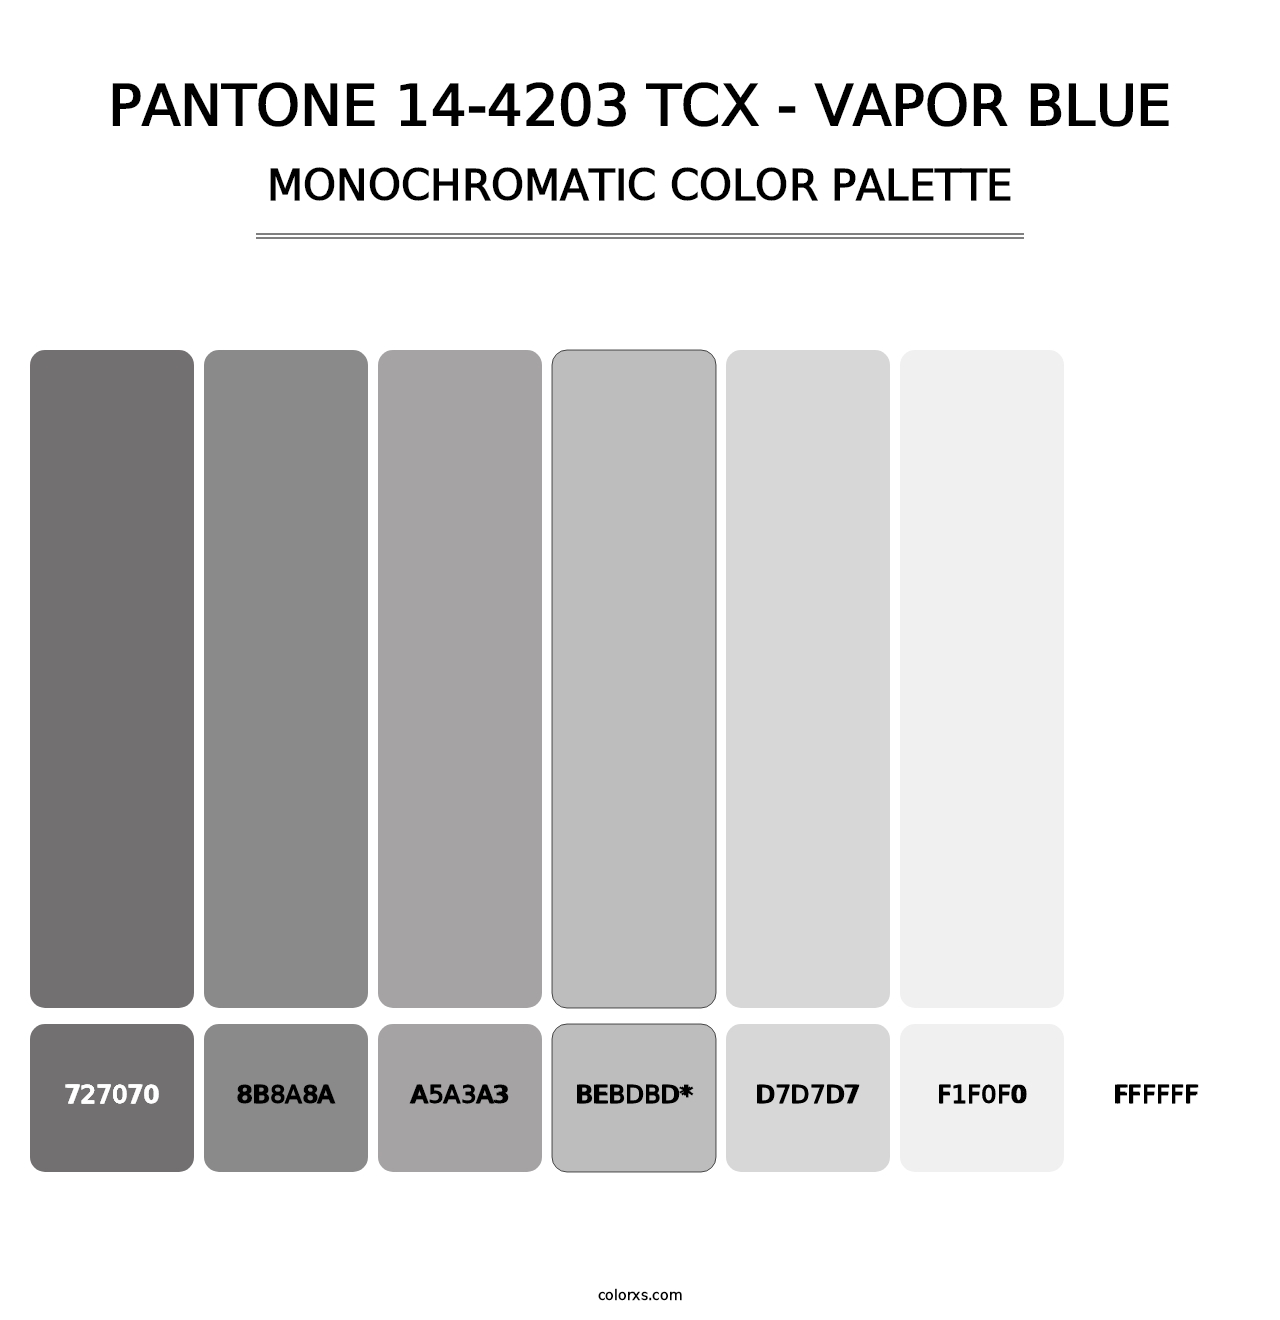 PANTONE 14-4203 TCX - Vapor Blue - Monochromatic Color Palette